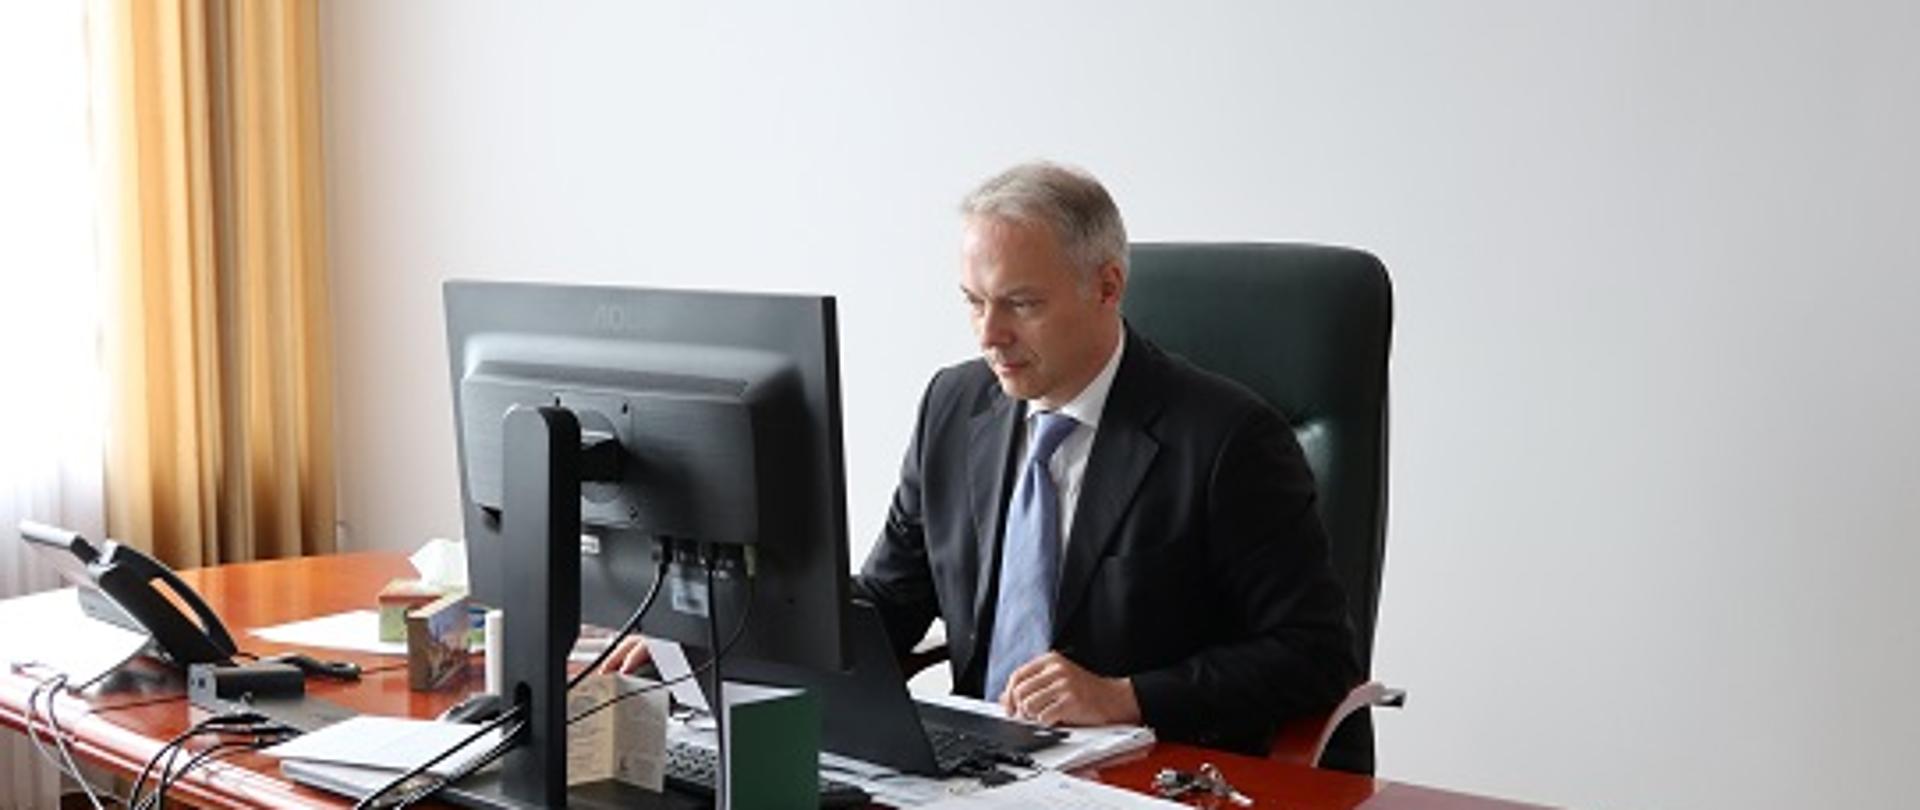 Wiceminister Jacek Żalek siedzi przy biurku, przed komputerem. Na biurku widoczne dokumenty.